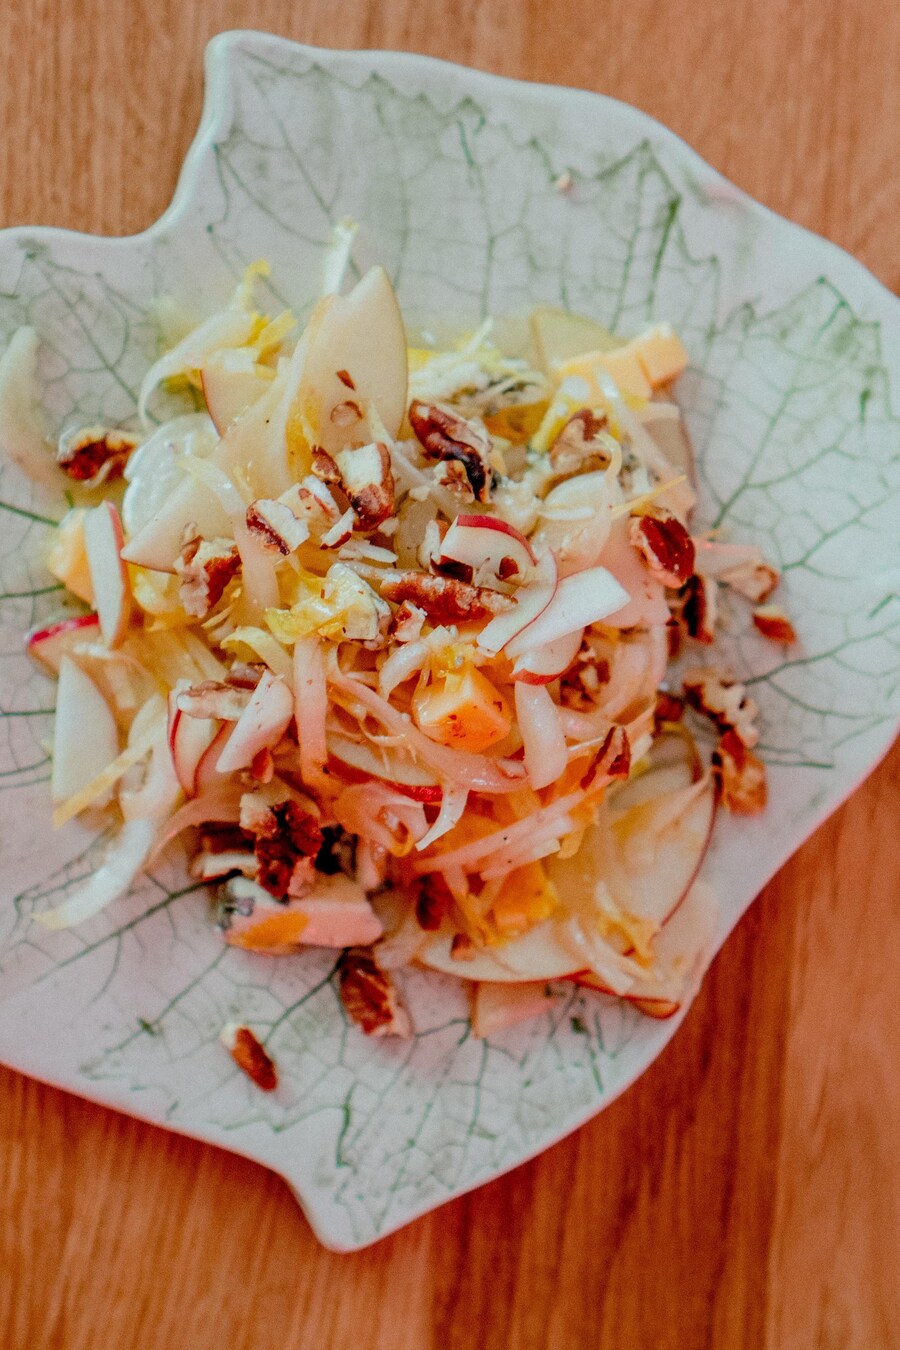 Une salade d'endive, pomme, pacane sur une assiette en forme de feuille d'érable.